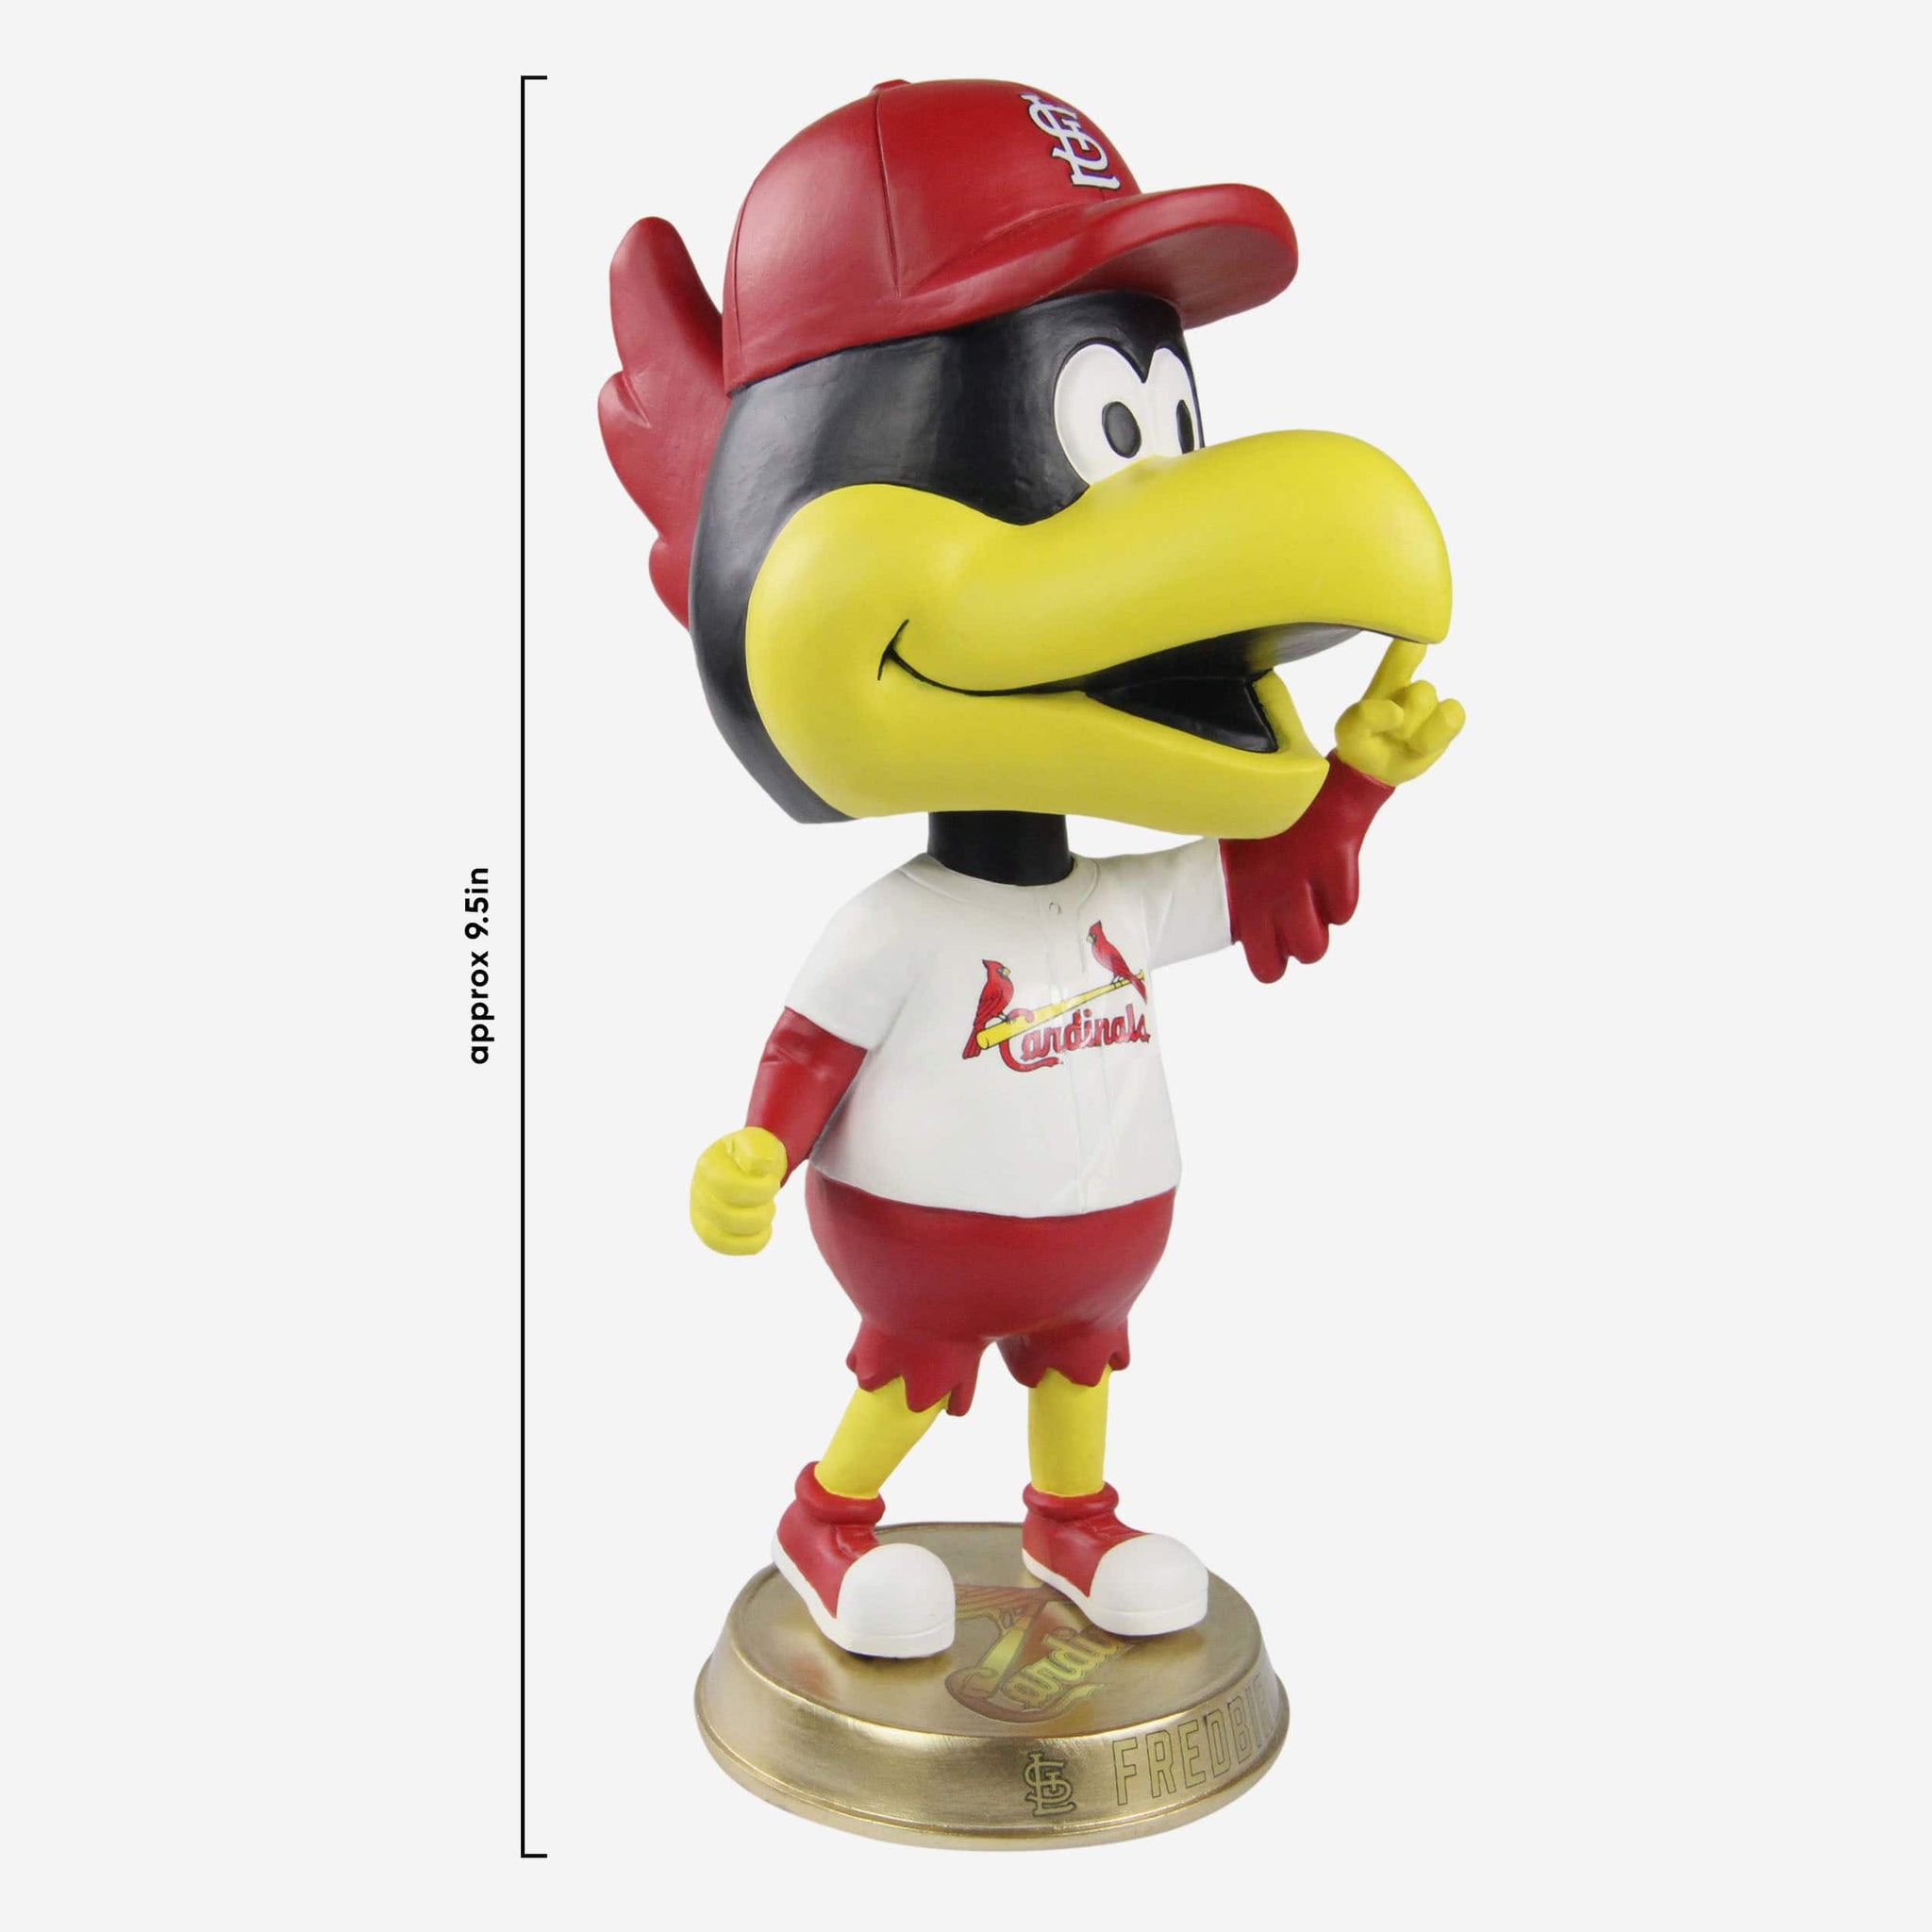 St Louis Cardinals Mascot Statue - ShopperBoard